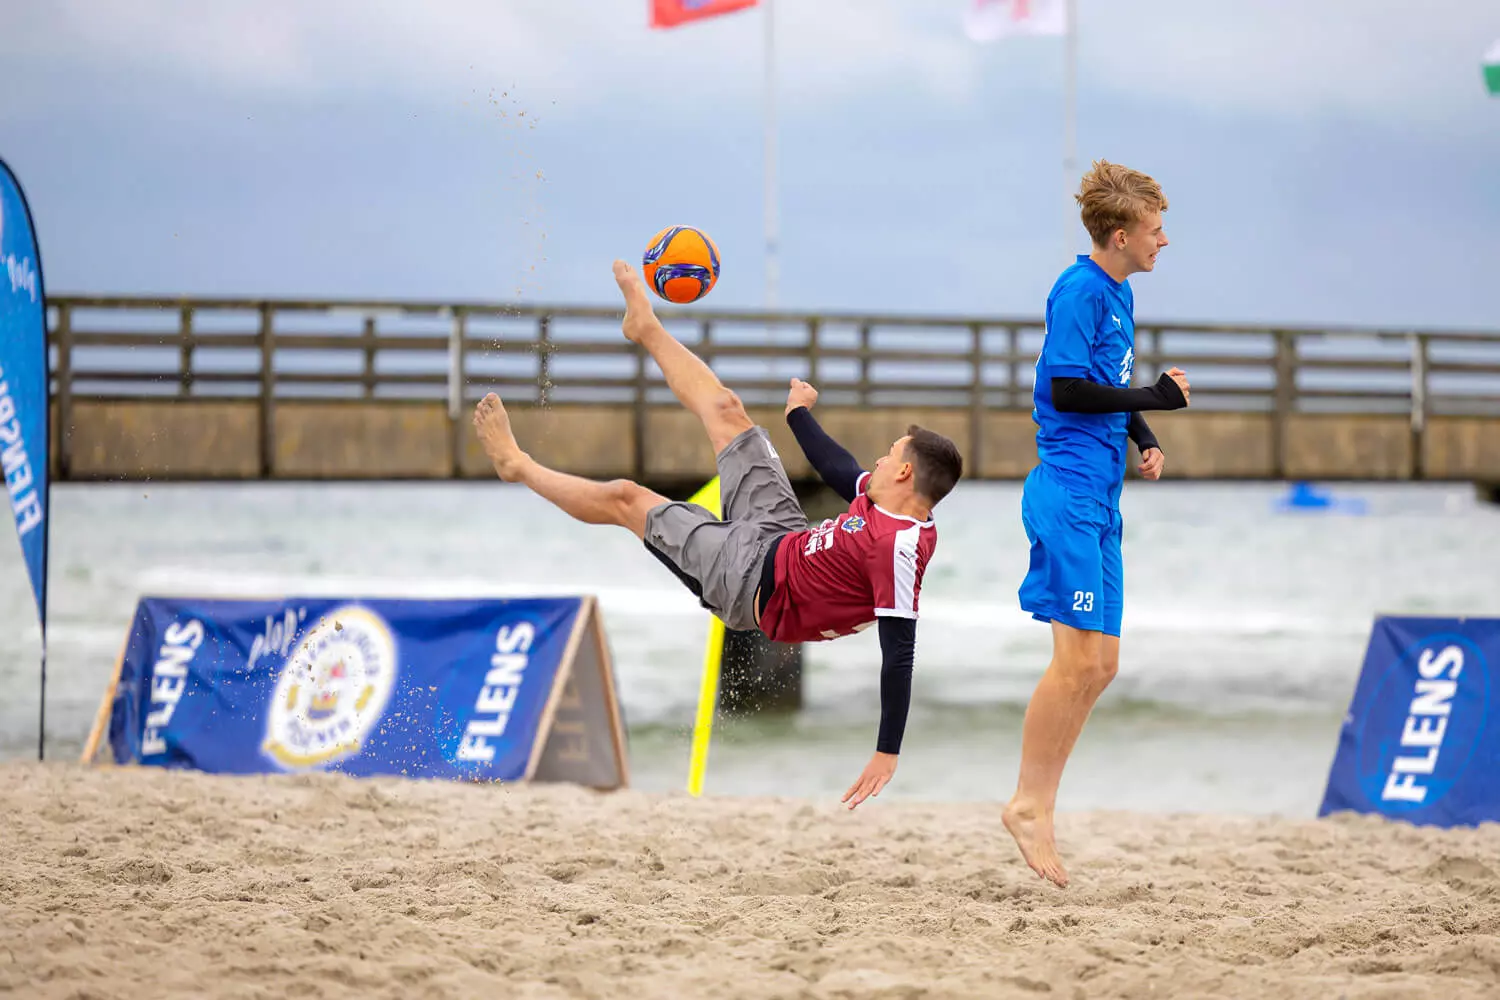 Teilnehmer des FLENS Beach Trophy Turniers am Strand bei einer Flanke.